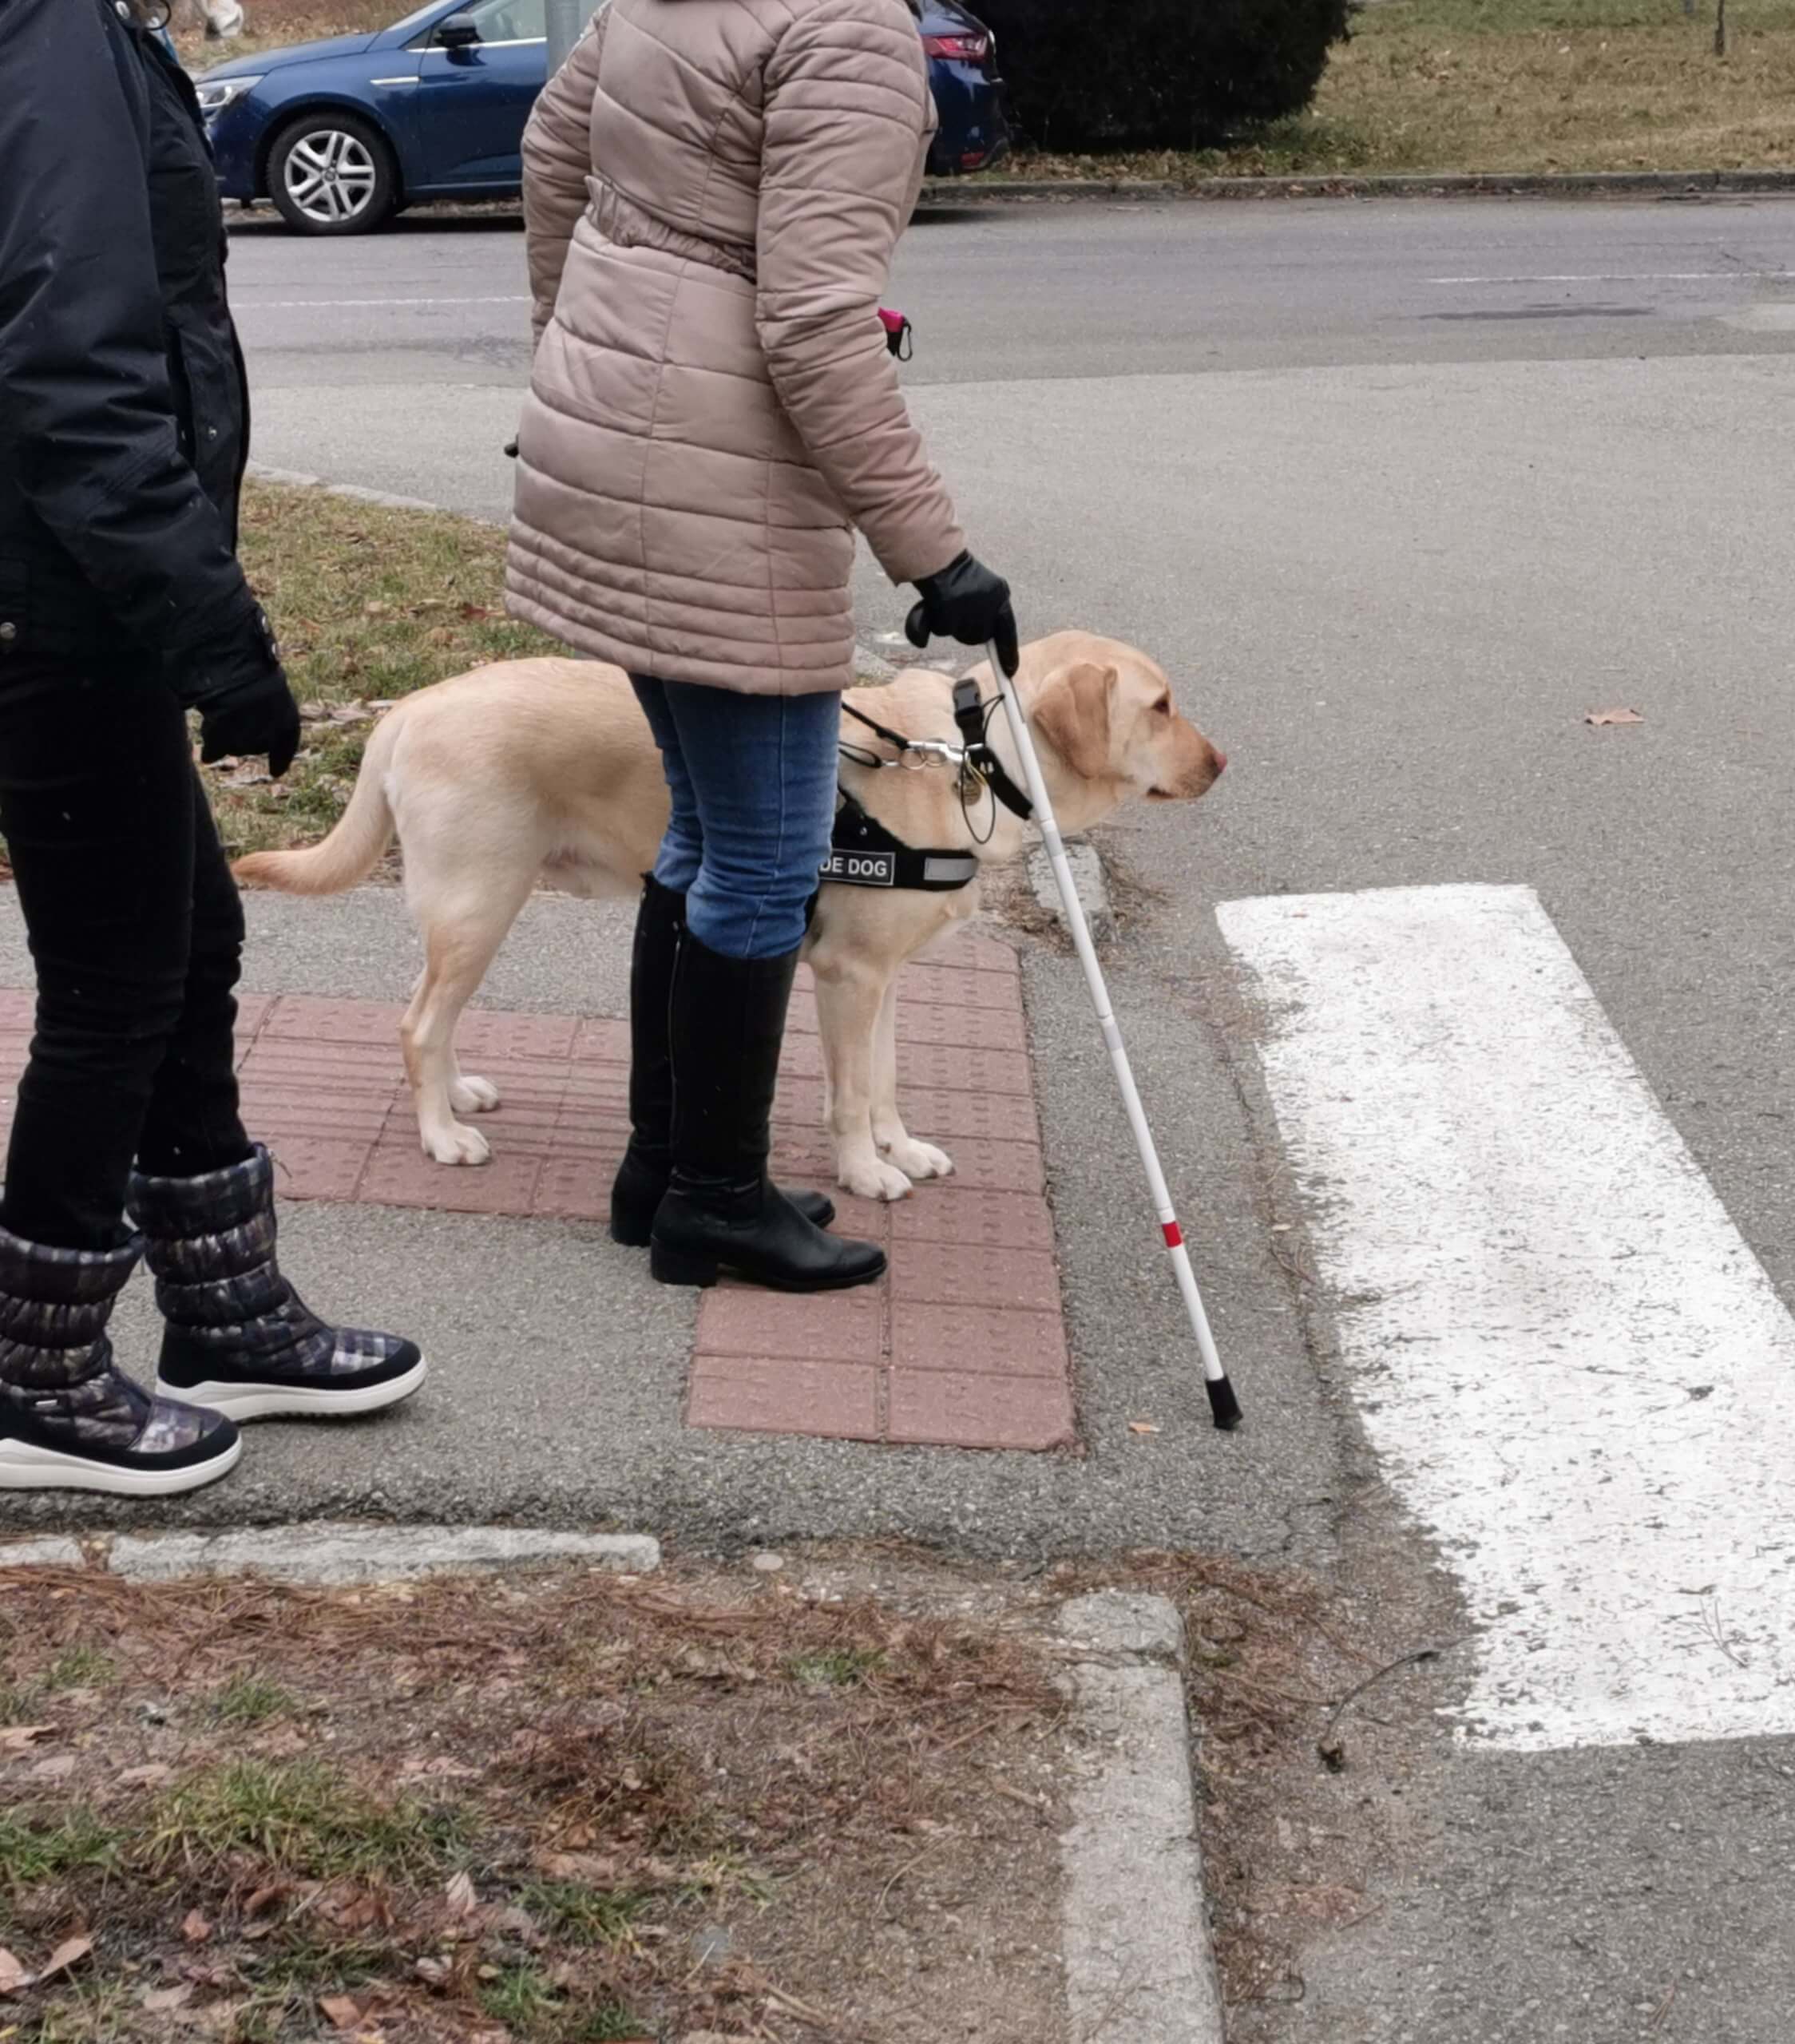 Klientka s vodiacim psom stoja na okraji chodníka pri zebre.